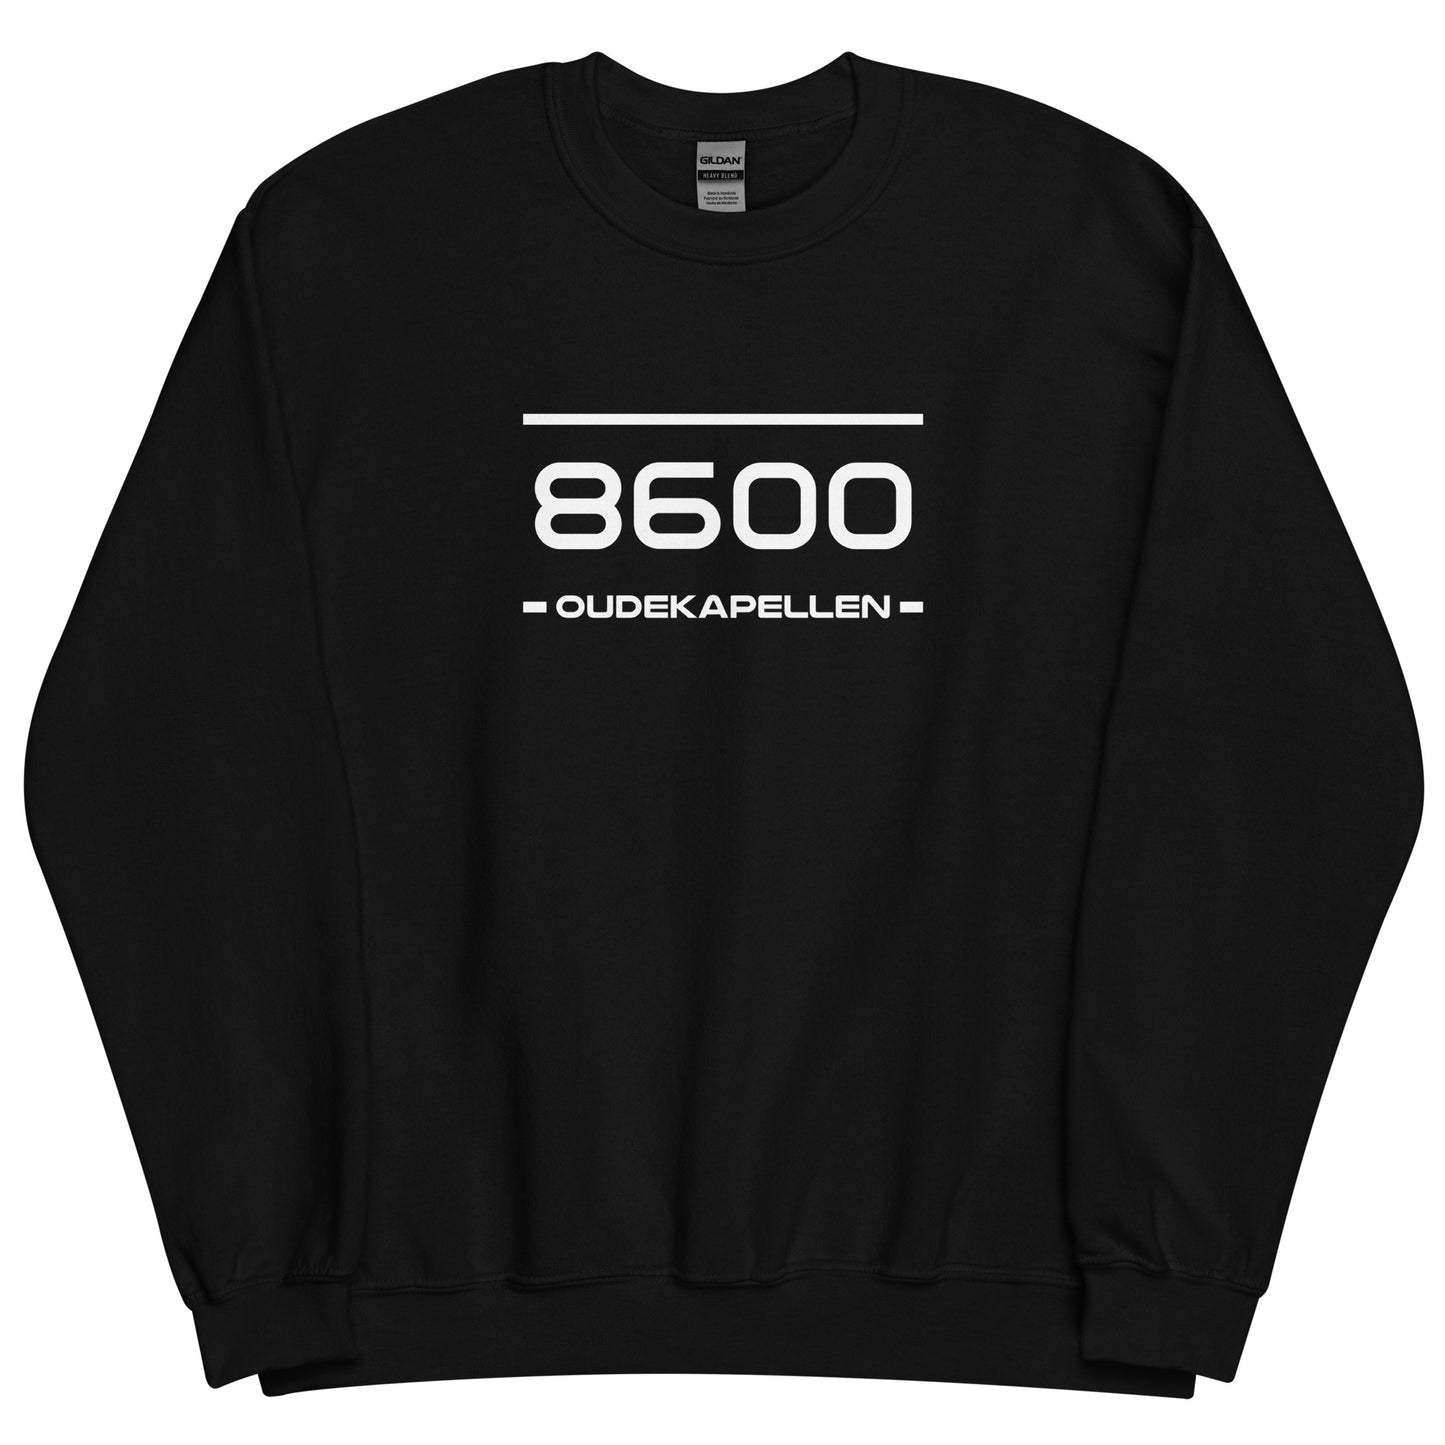 Sweater - 8600 - Oudekapellen (M/V)